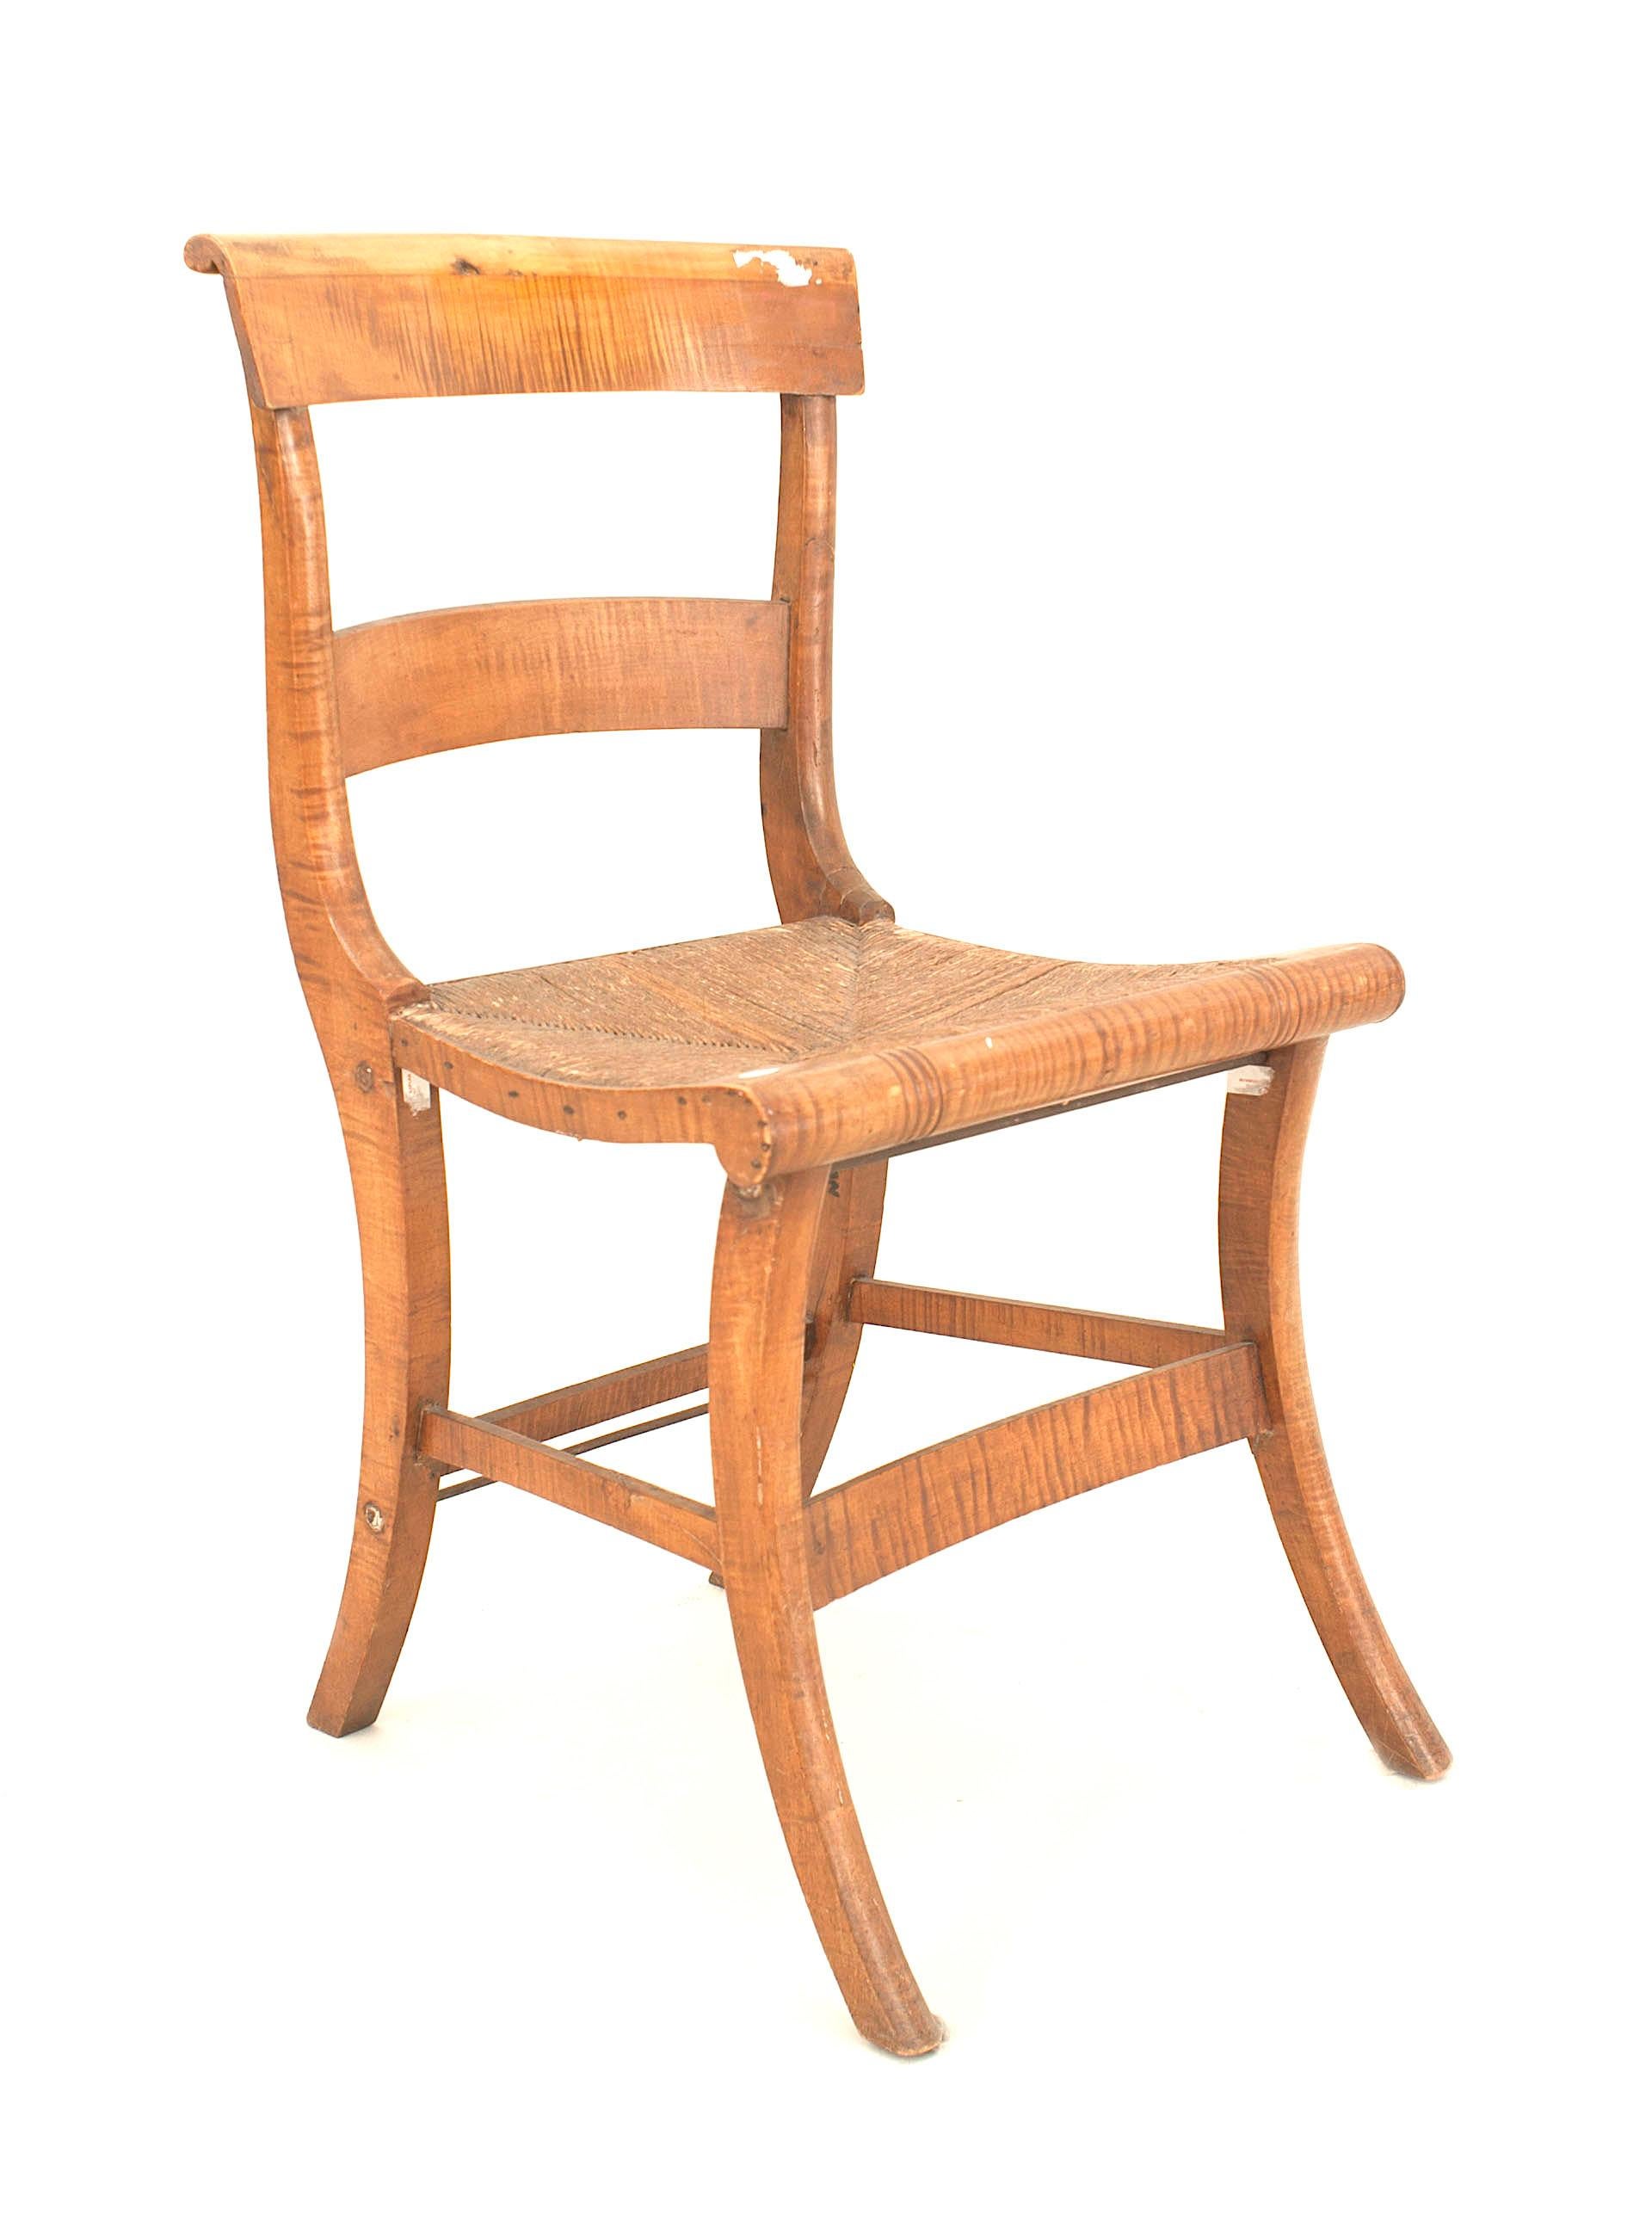 Ensemble de 4 chaises latérales en érable tigré de style fédéral américain (19e siècle) avec un siège en jonc et une traverse
